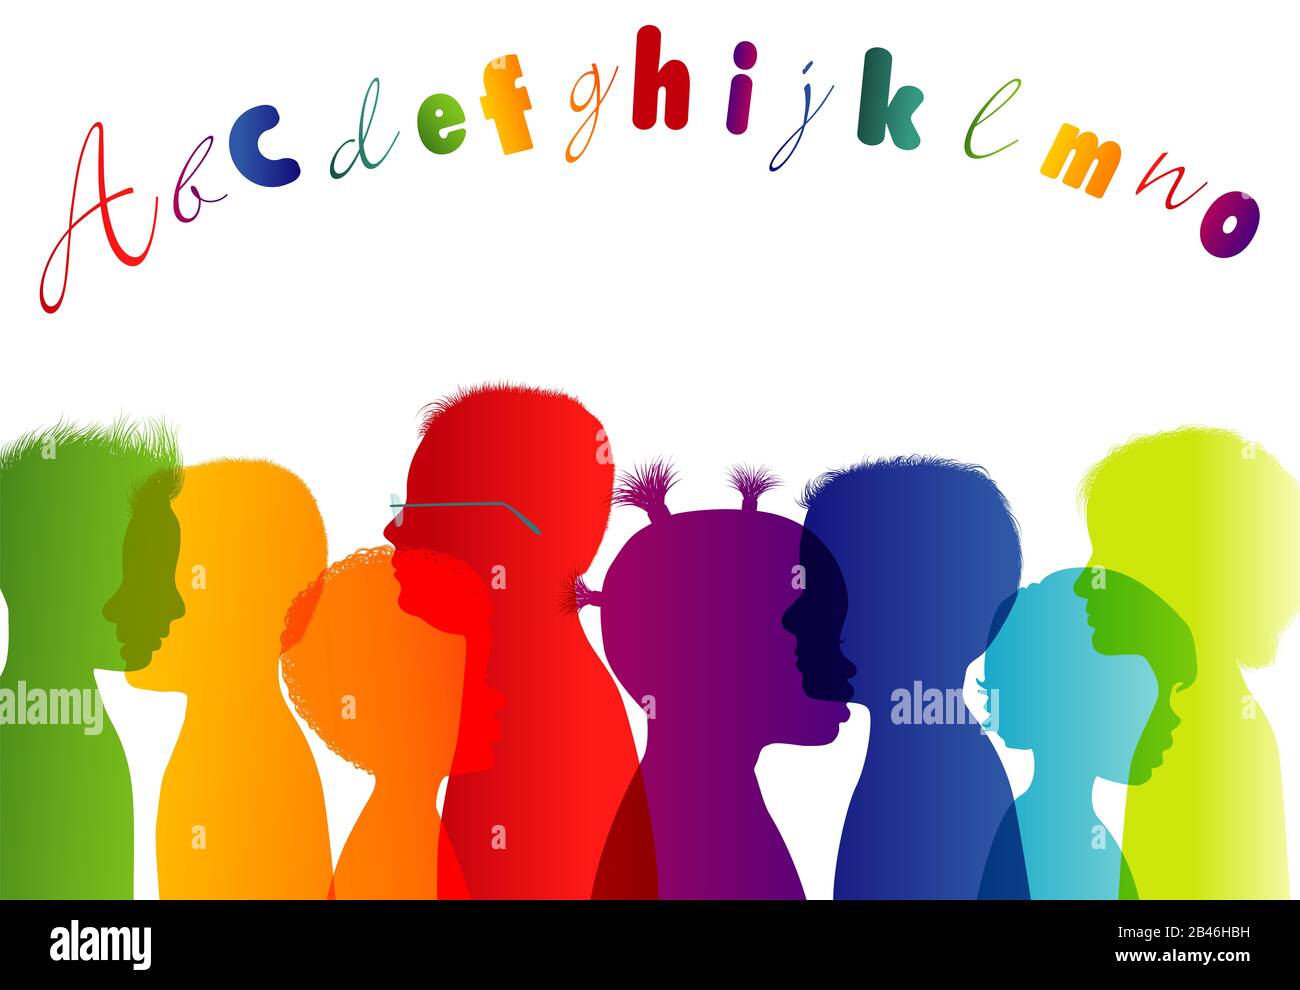 Niños multiétnicos. Jardín de infantes colorido. La infancia. Grupo diferentes niños perfil colores arco iris silueta aislada. Comunidad de multirracial Foto de stock